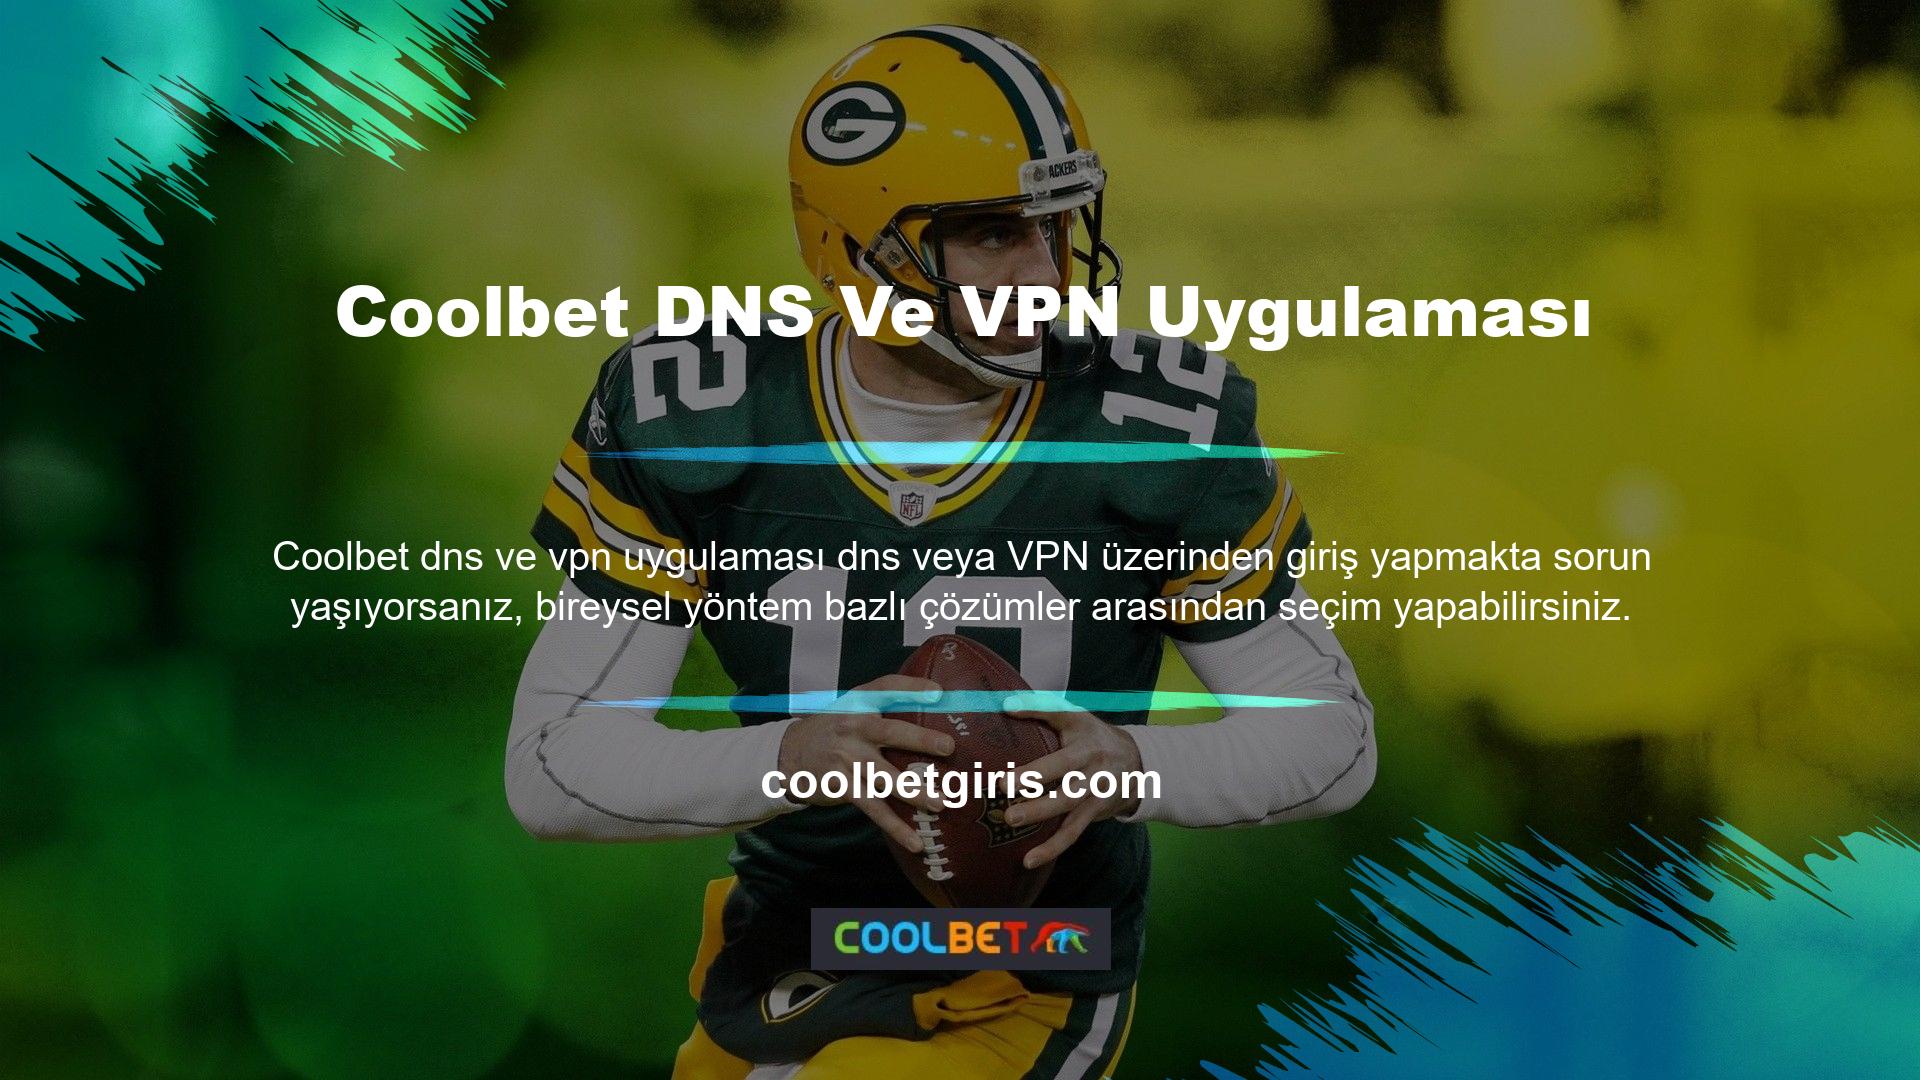 Peki Coolbet DNS VPN'ini mi kullanmalısınız? Hayır, bu yöntemleri kullanmak zorunda değilsiniz ancak bazı kullanıcılar çözüm olarak bunları tercih edebilir